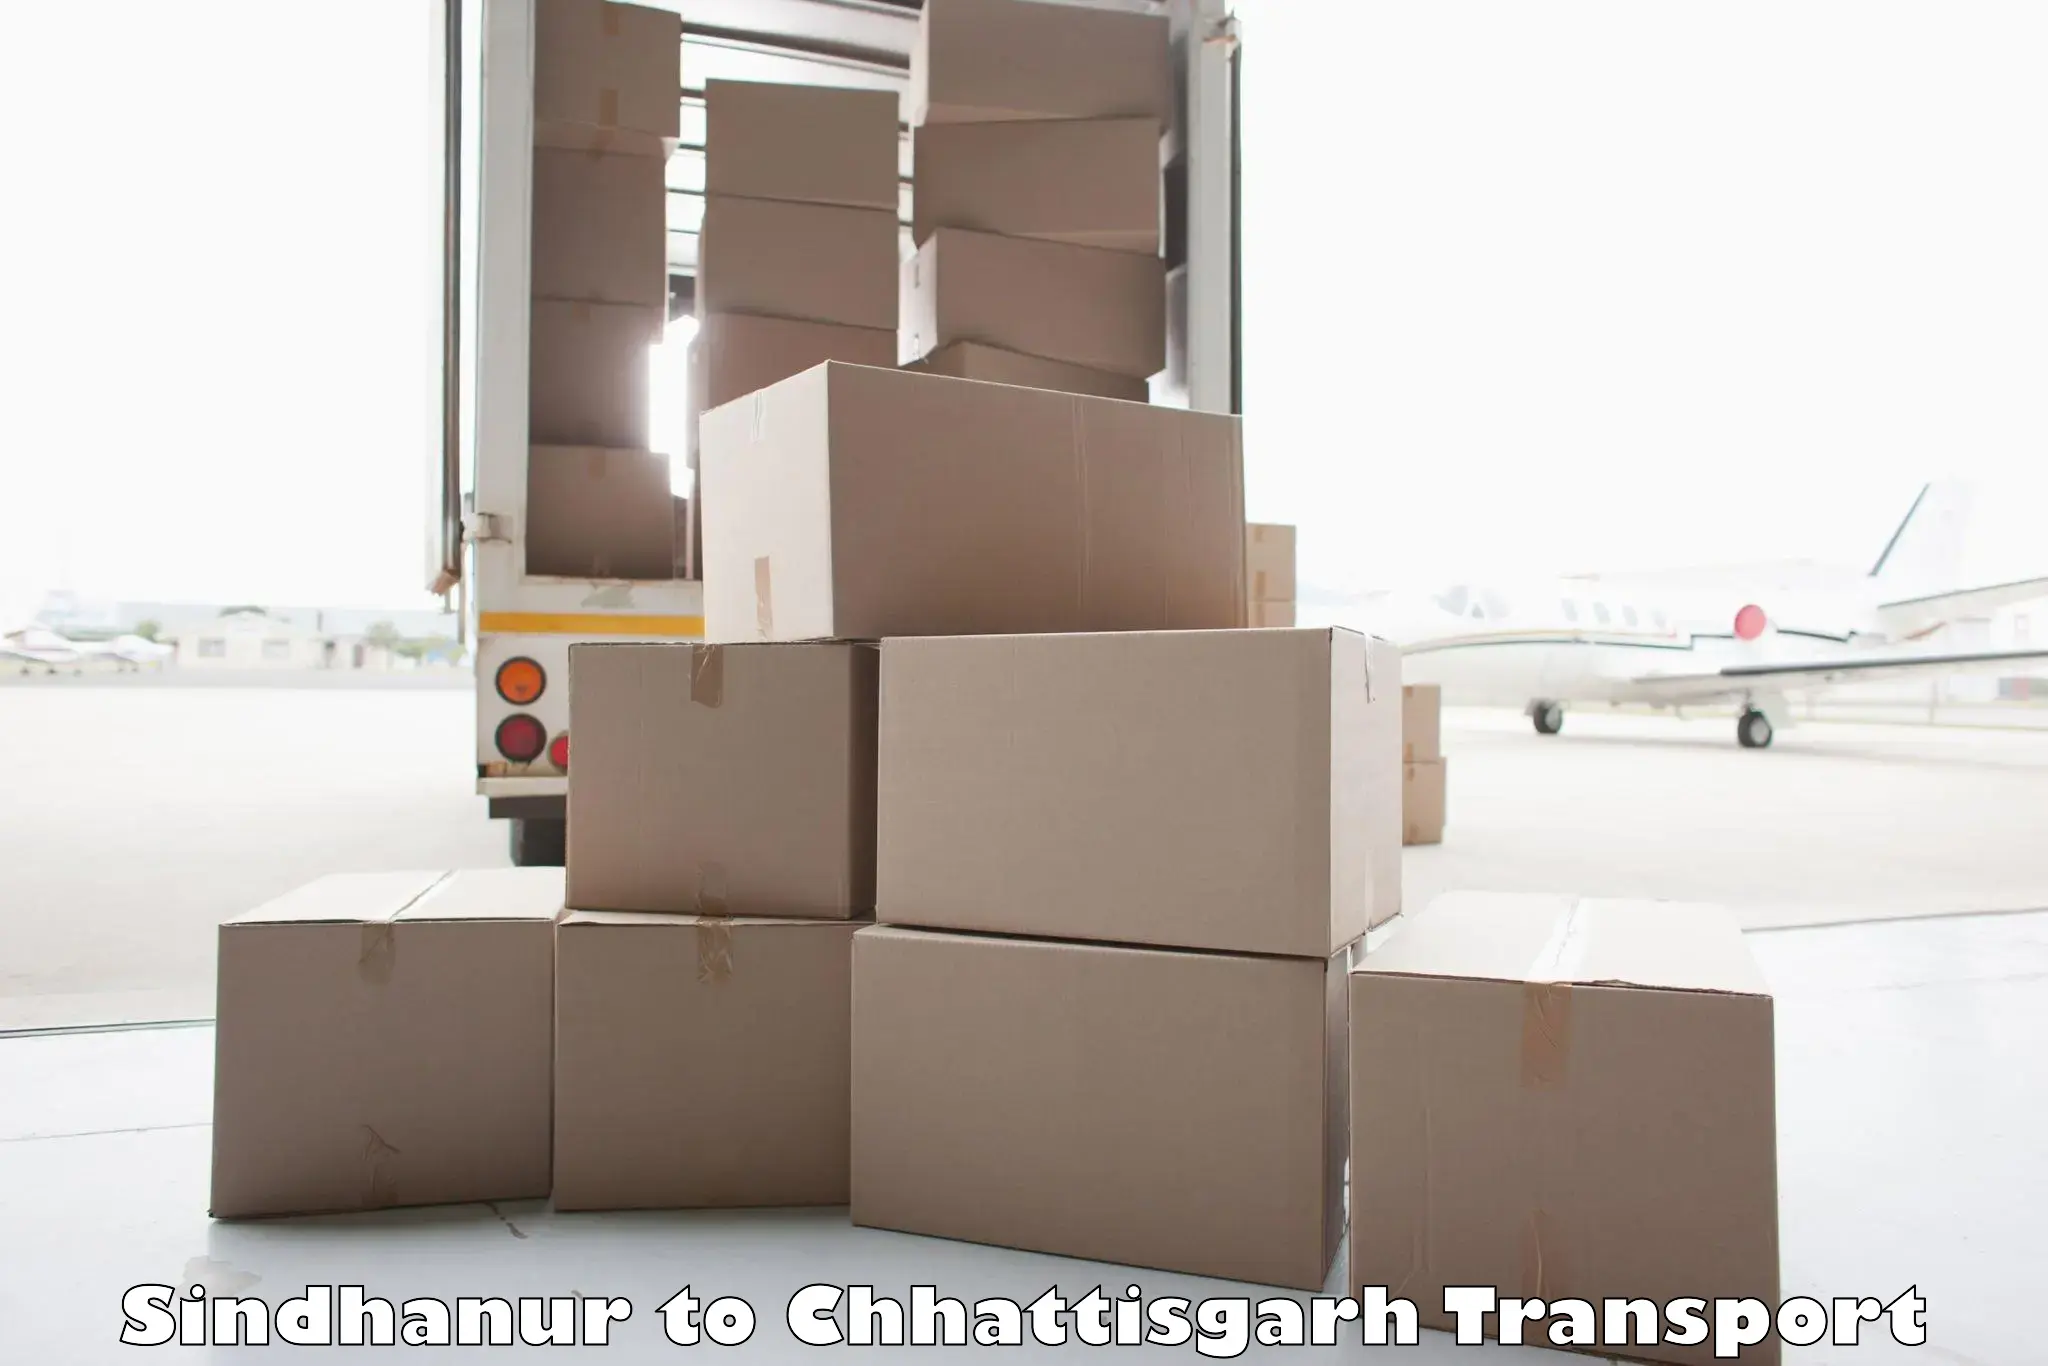 Furniture transport service Sindhanur to Pakhanjur